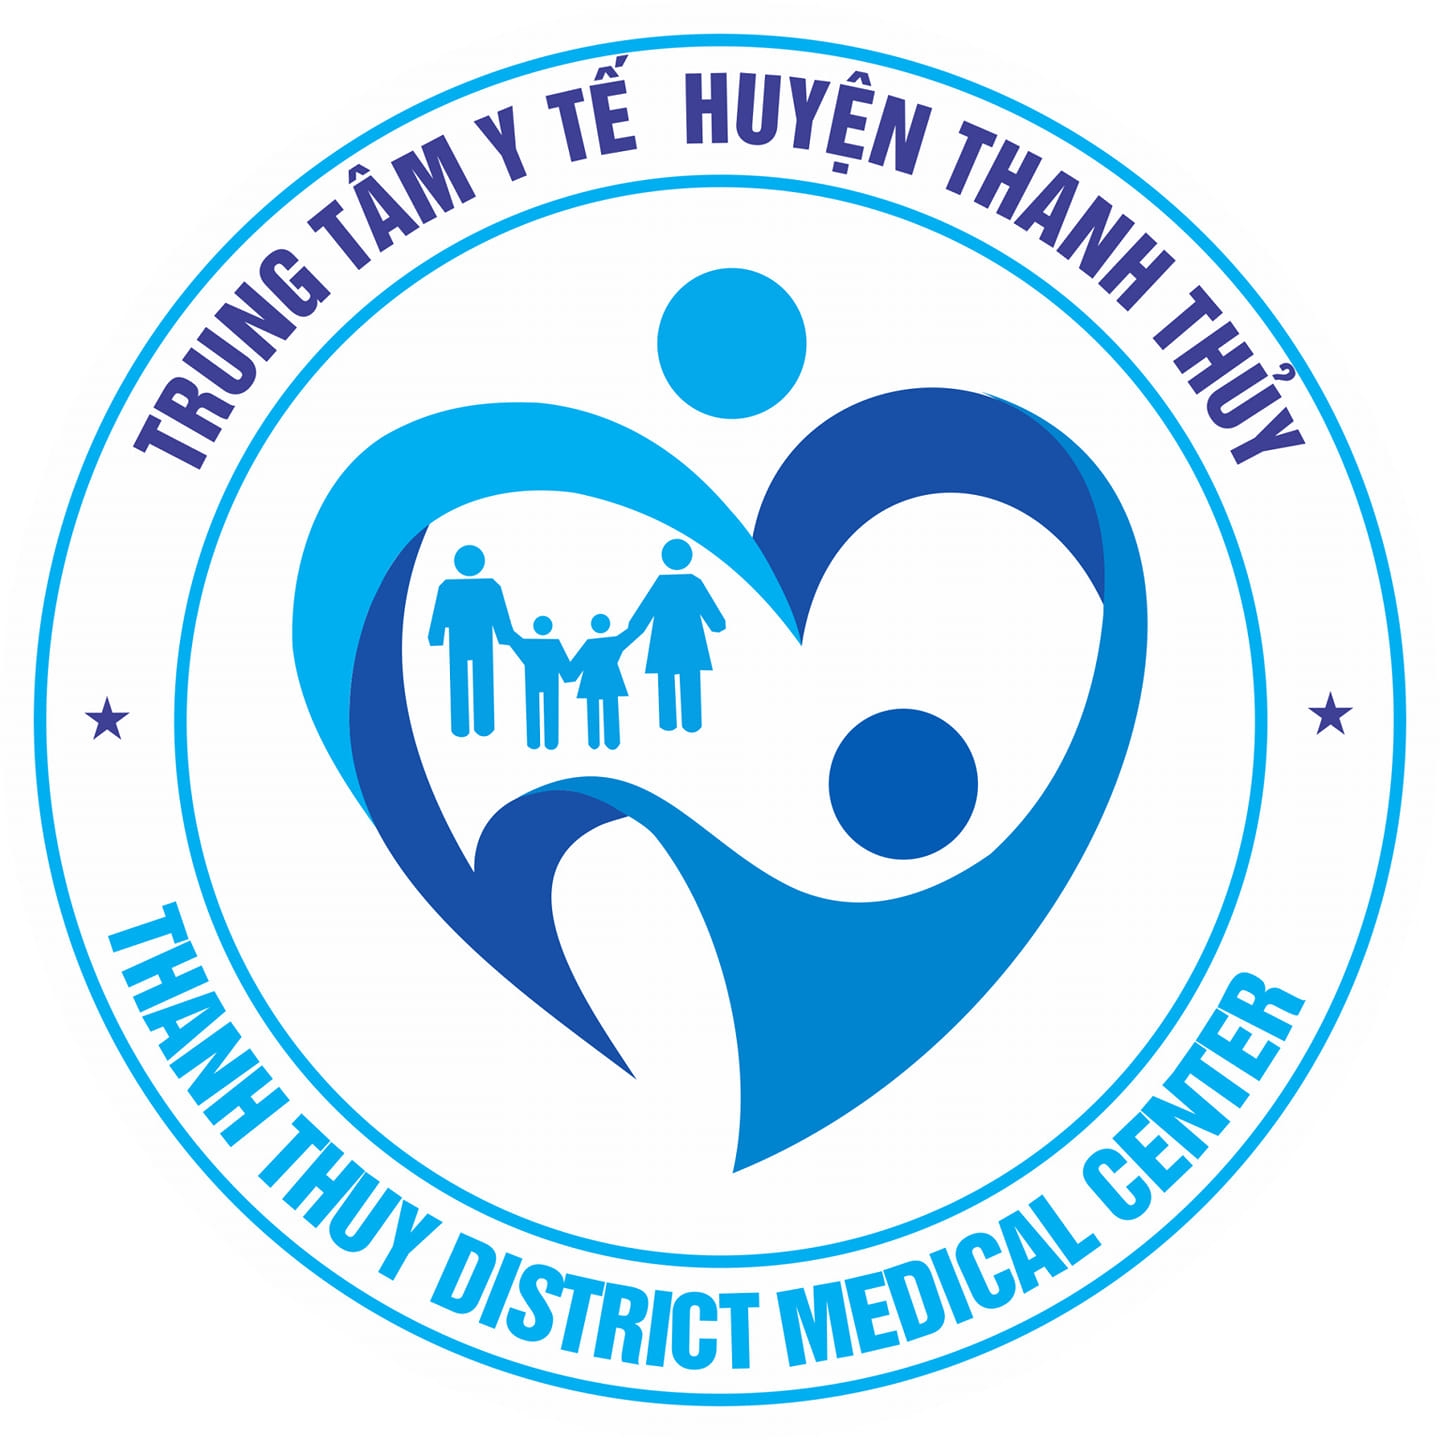 Báo cáo kết quả tự kiểm tra đánh giá chất lượng Trung tâm Y tế huyện Thanh Thủy năm 2020